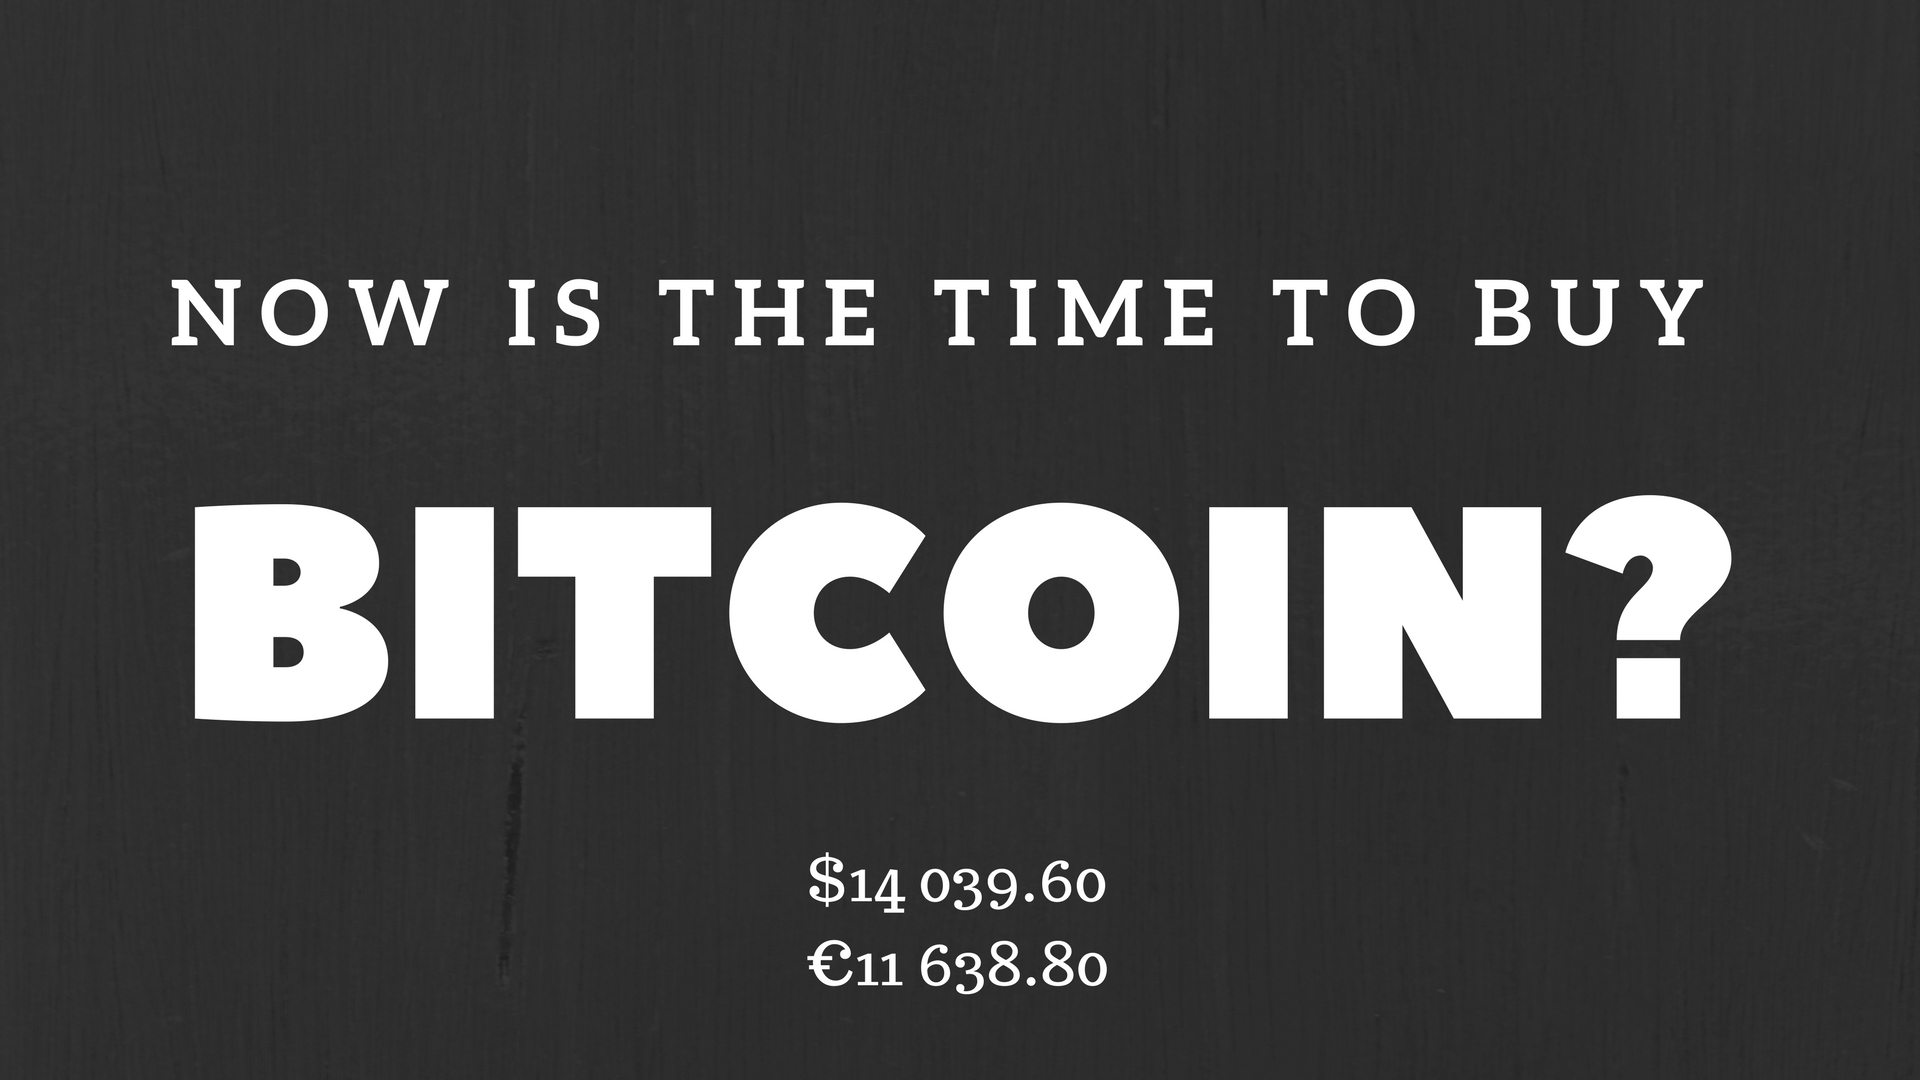 i need to buy bitcoin now